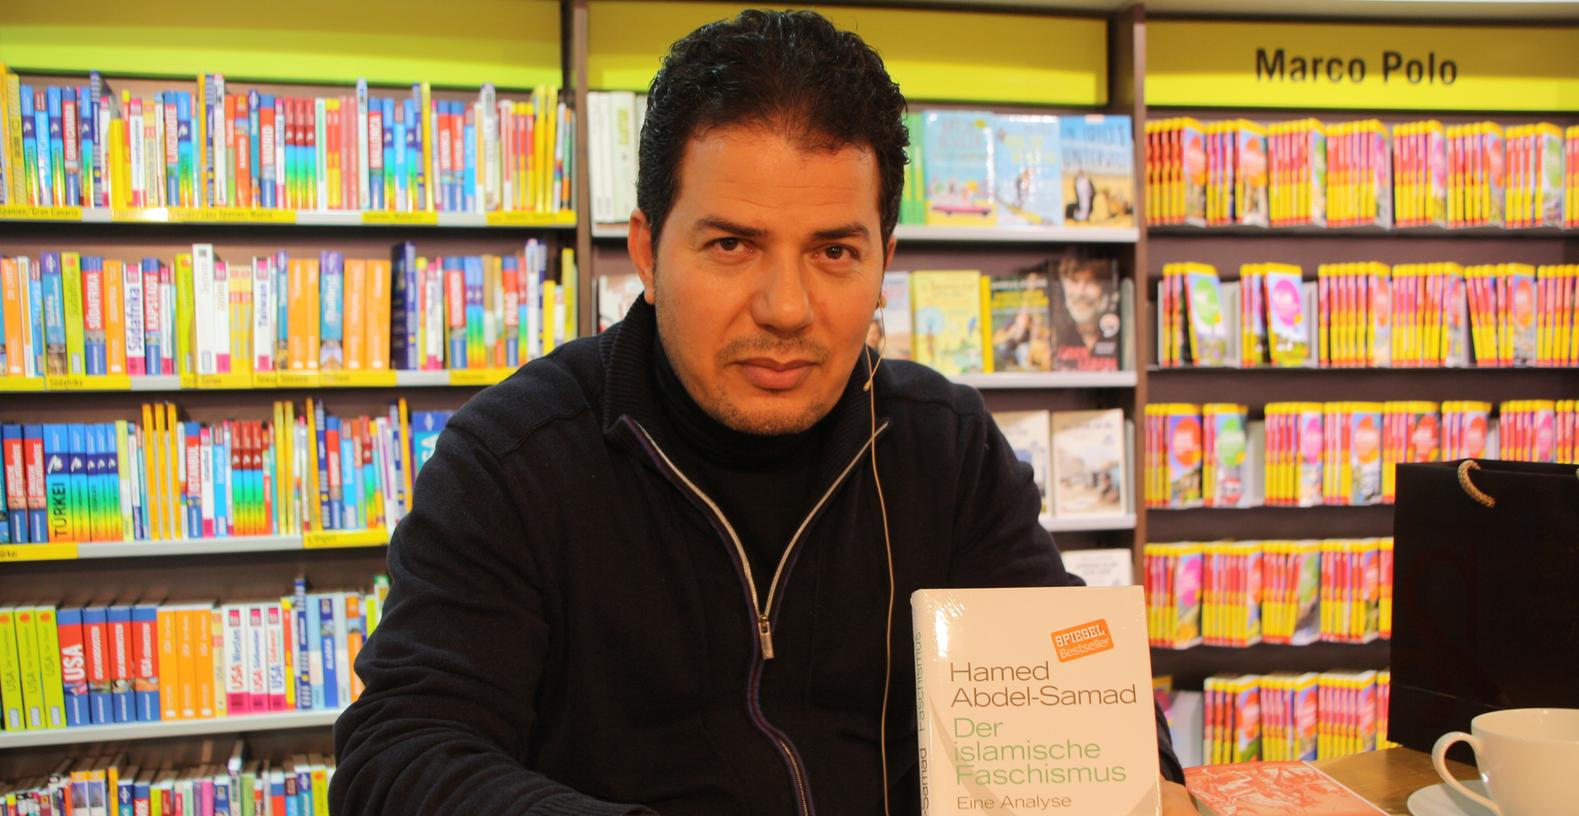 Der deutsch-ägyptische Politologe und Autor Hamed Abdel-Samad stellt sein neues Buch "Der islamische Faschismus" in Bamberg vor.